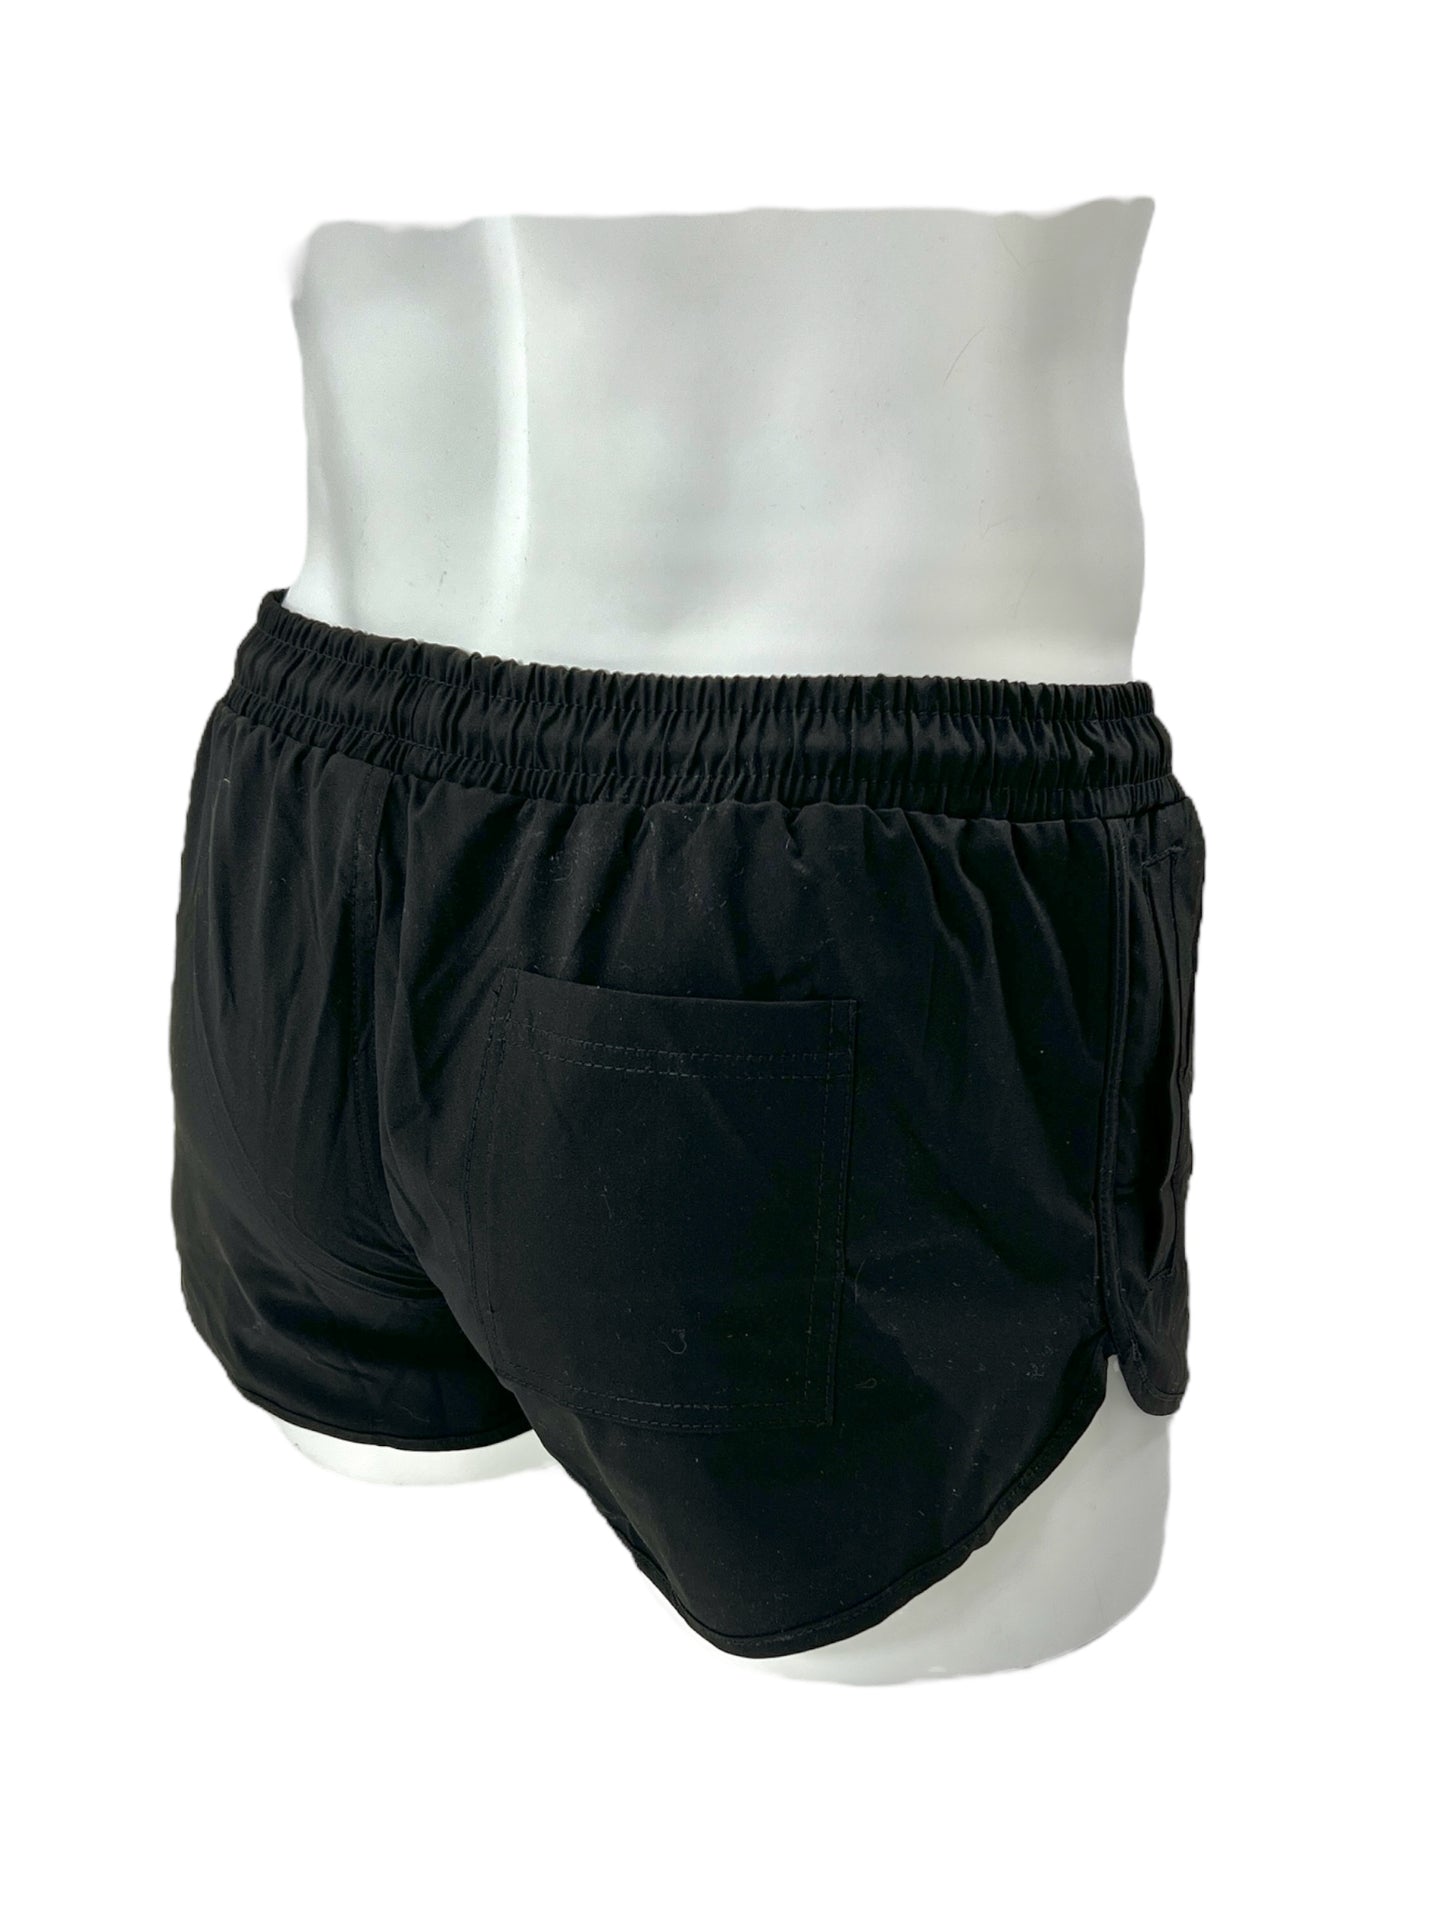 Shorts o bañador con perneras cortas en color beige, negro o azul marino